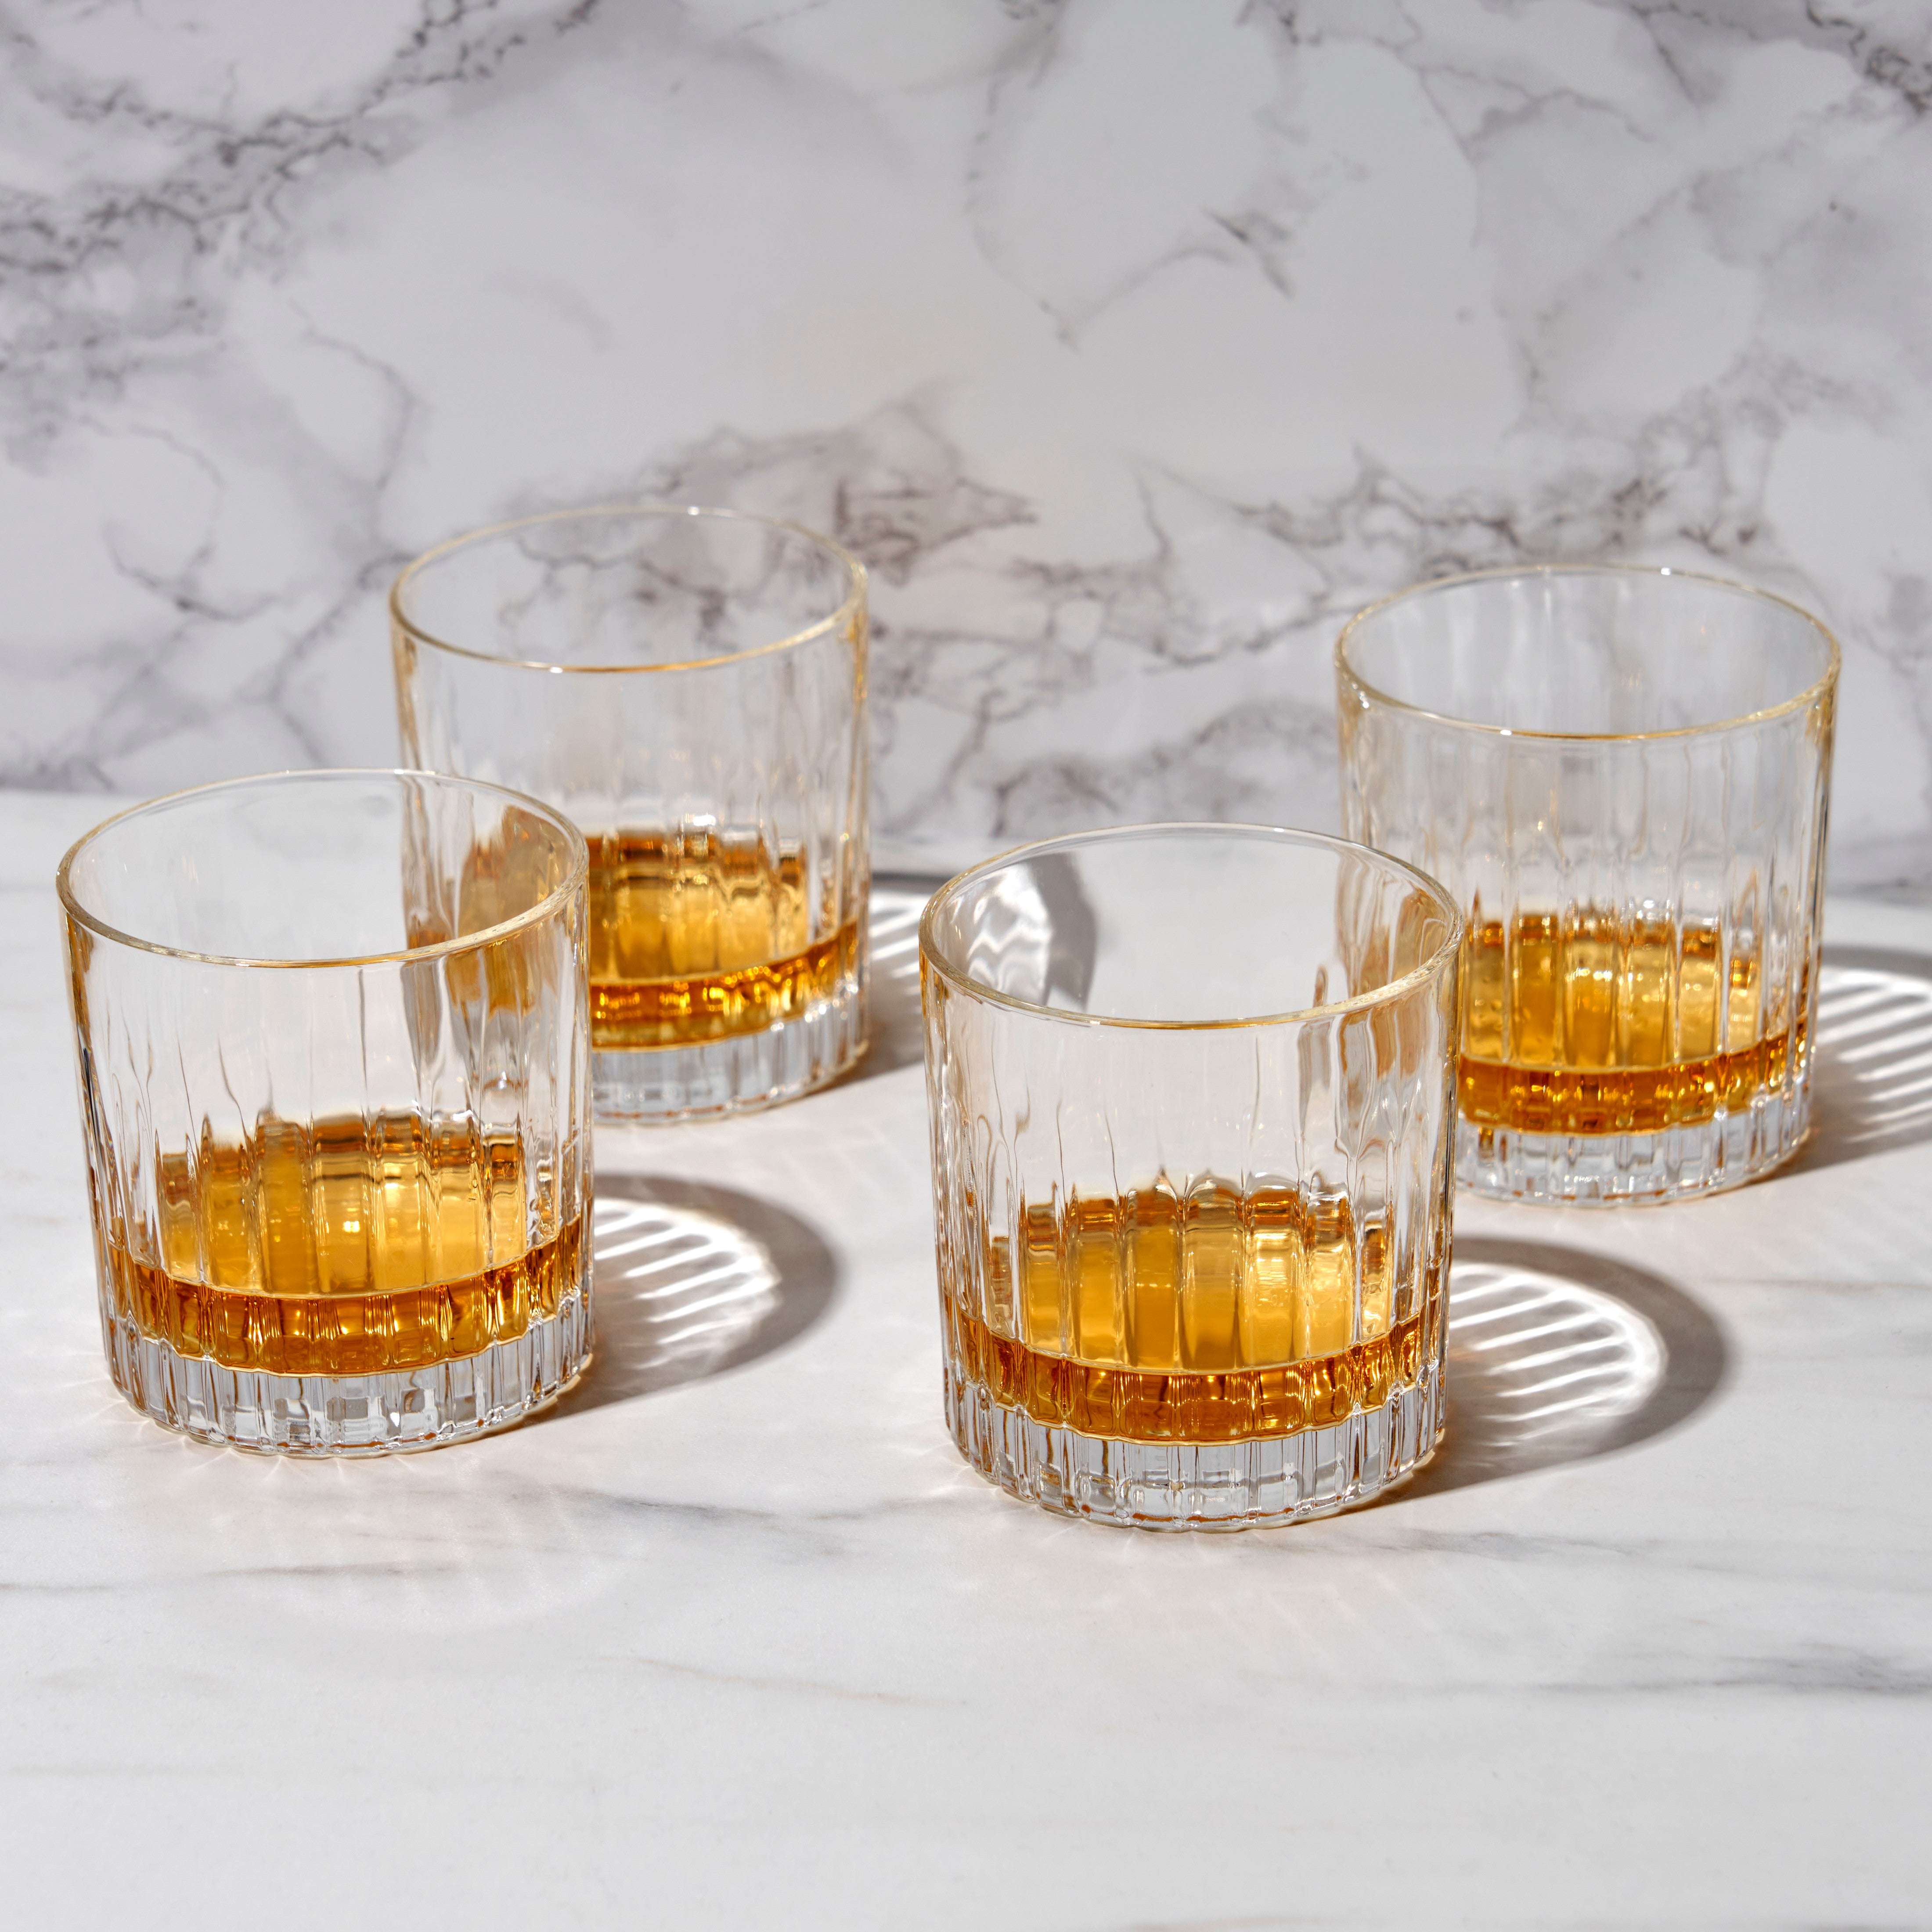 Viski Reserve Milo Neat Glasses Whiskey Glass Neat Bourbon Glasses